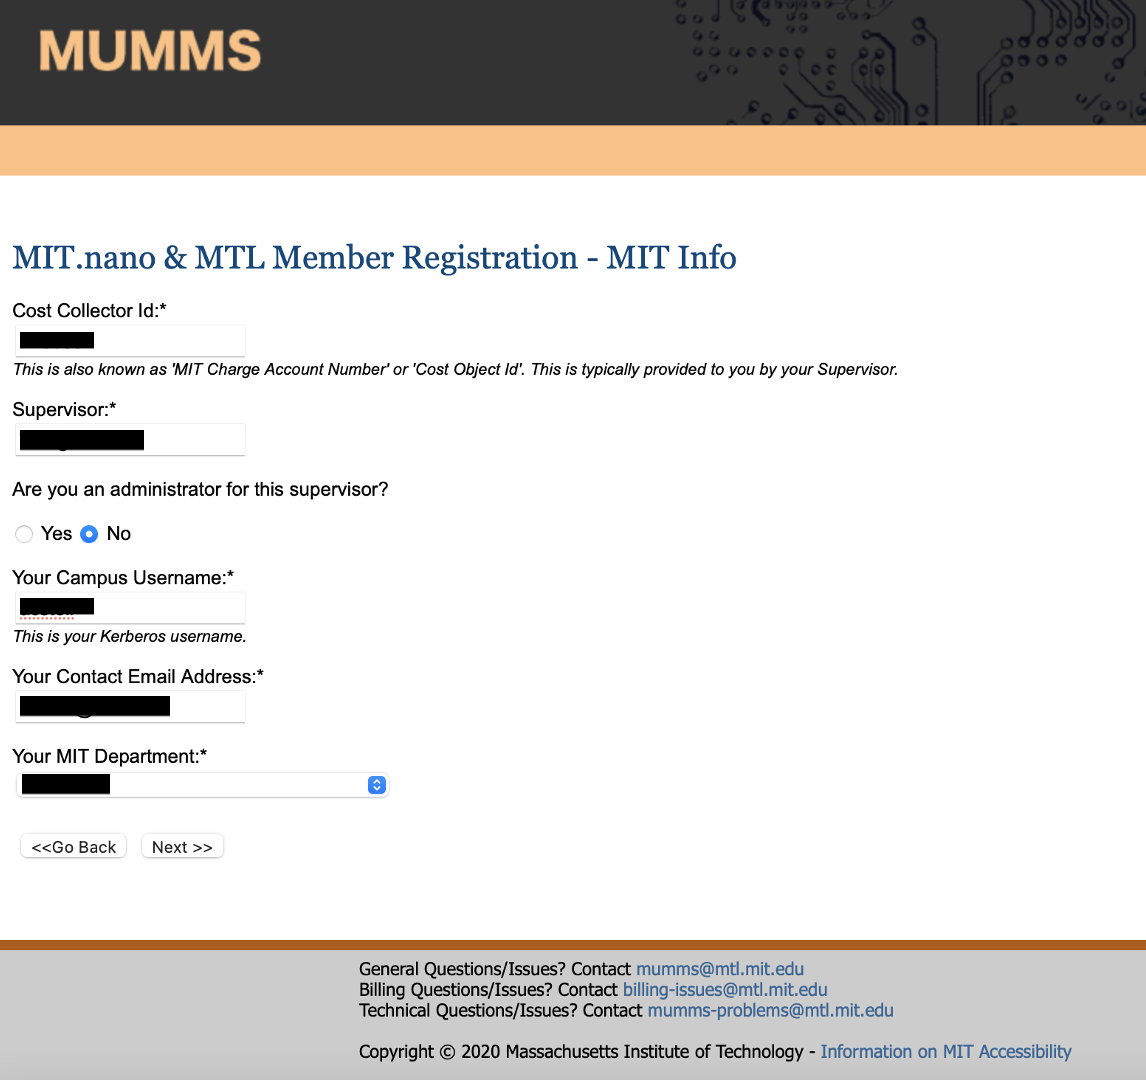 MIT Info page in MUMMS registration